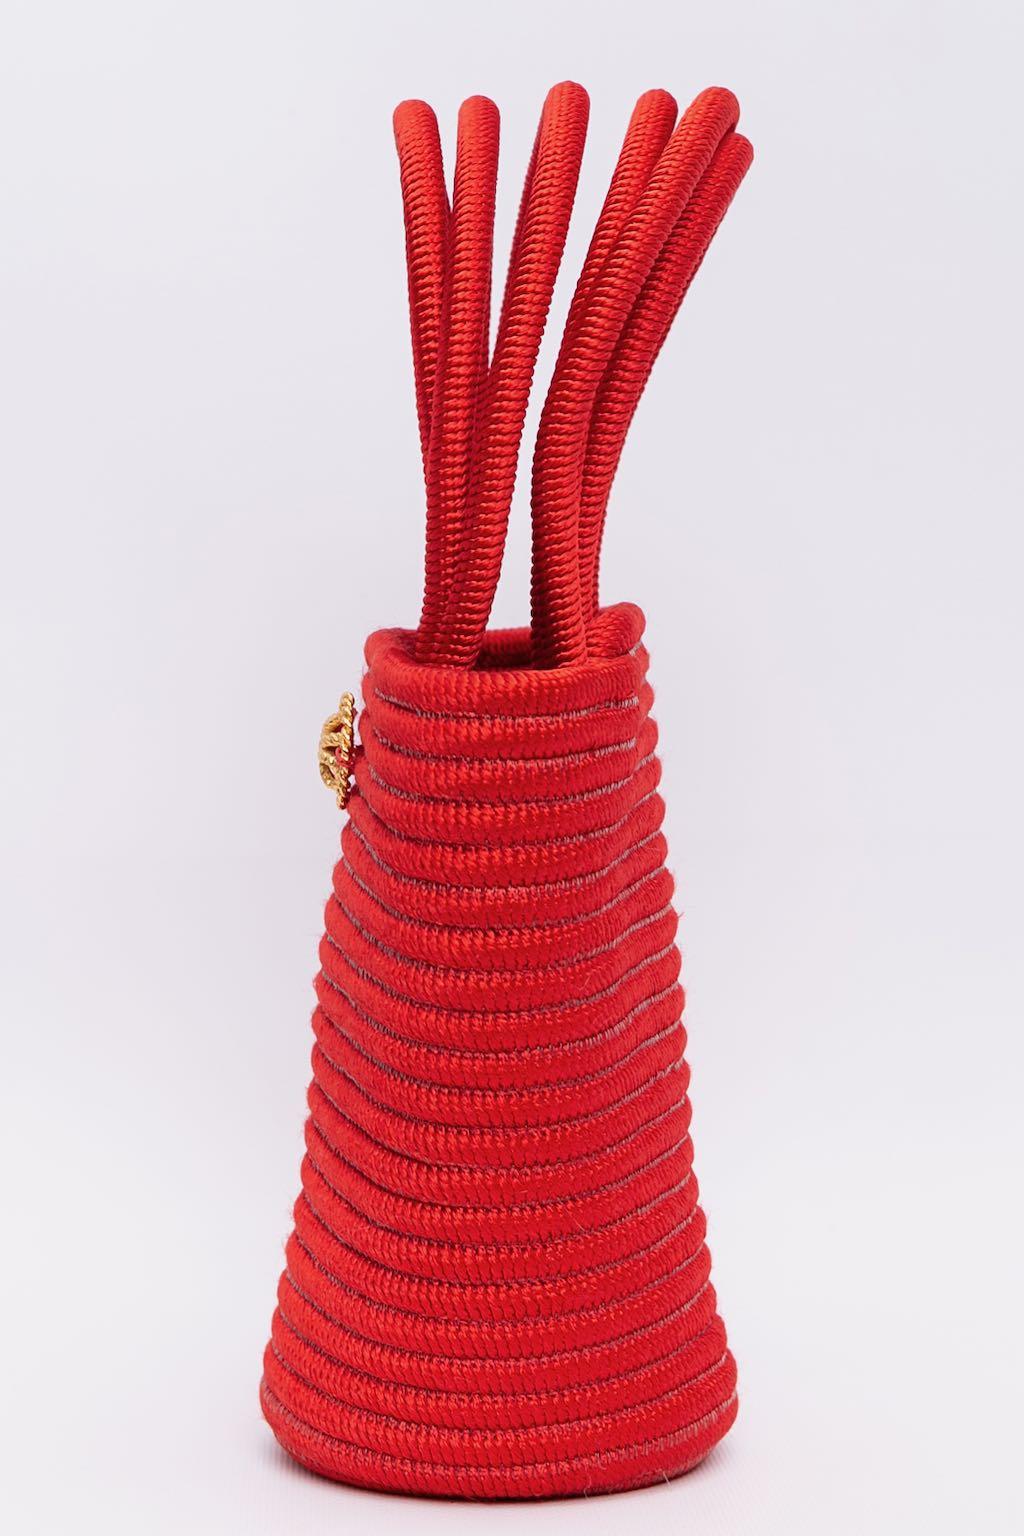 Nina Ricci (Made in France) Rote Passepartout-Tasche.

Zusätzliche Informationen: 

Abmessungen: 
Länge: 20 cm (7.87